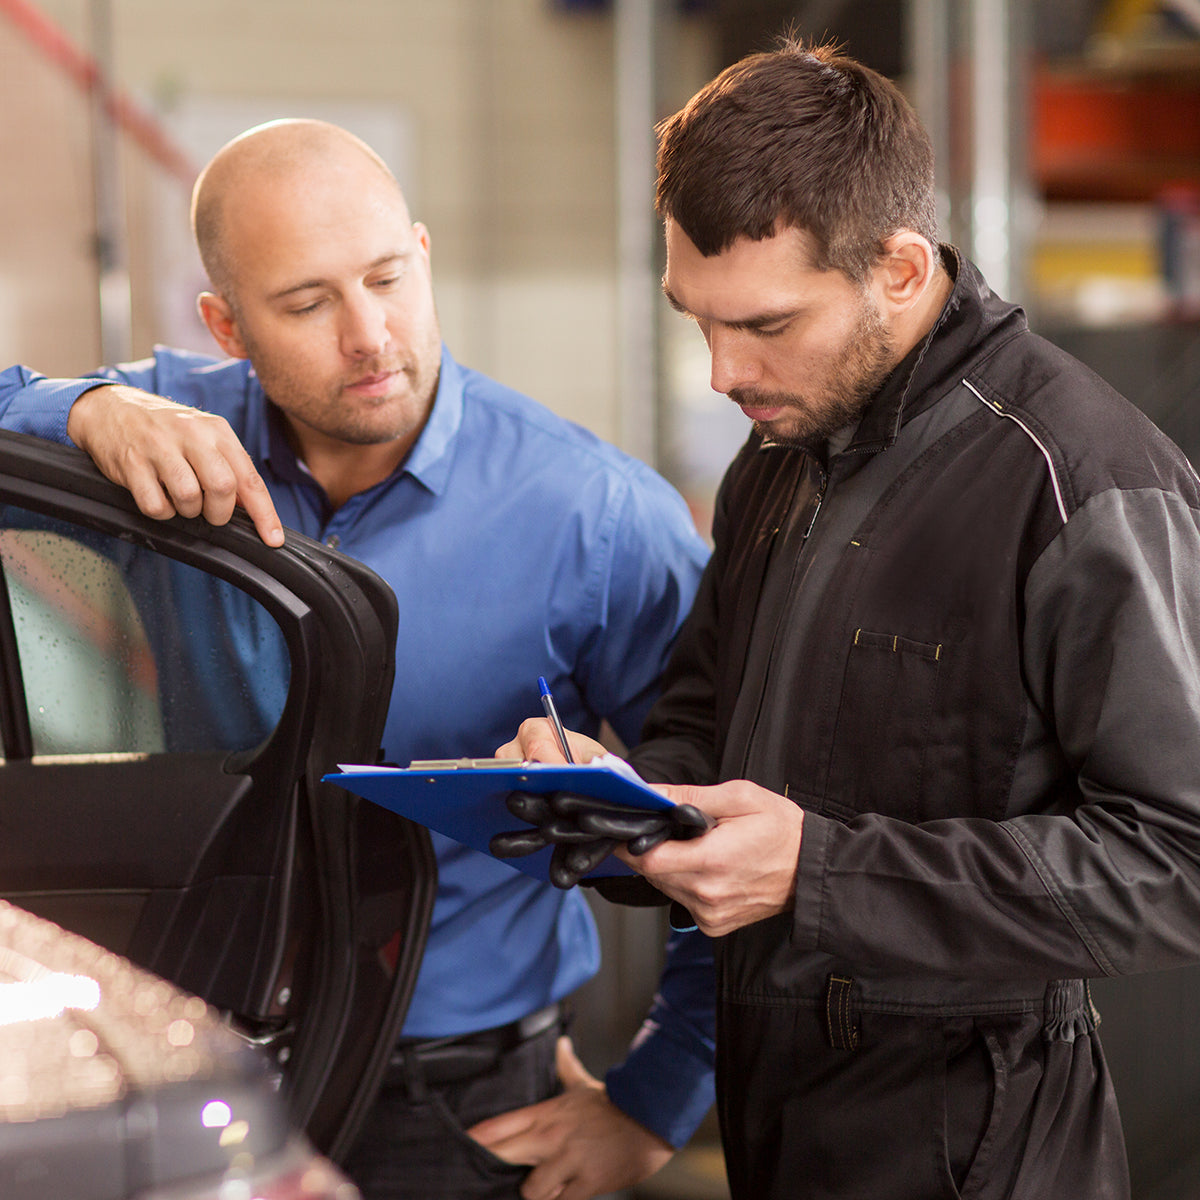 Quando fazer a manutenção preventiva no carro?